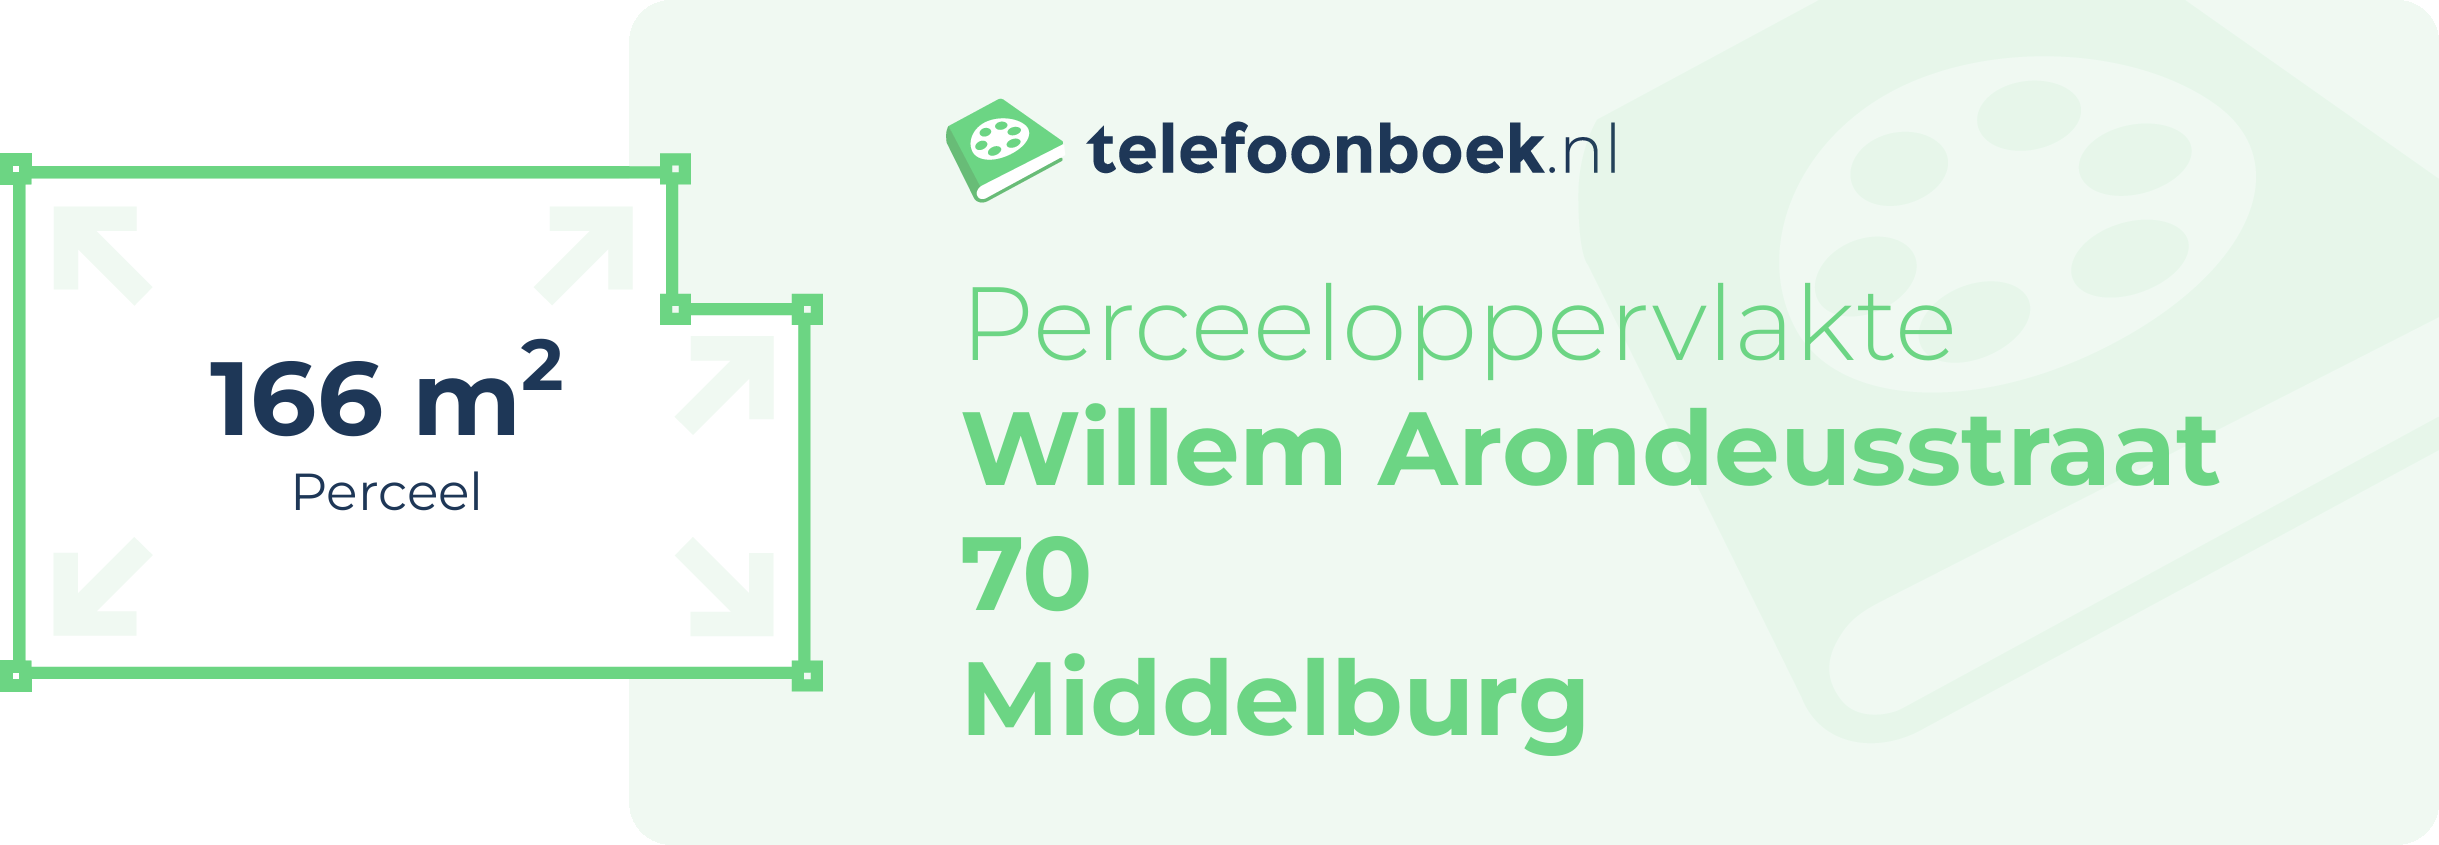 Perceeloppervlakte Willem Arondeusstraat 70 Middelburg